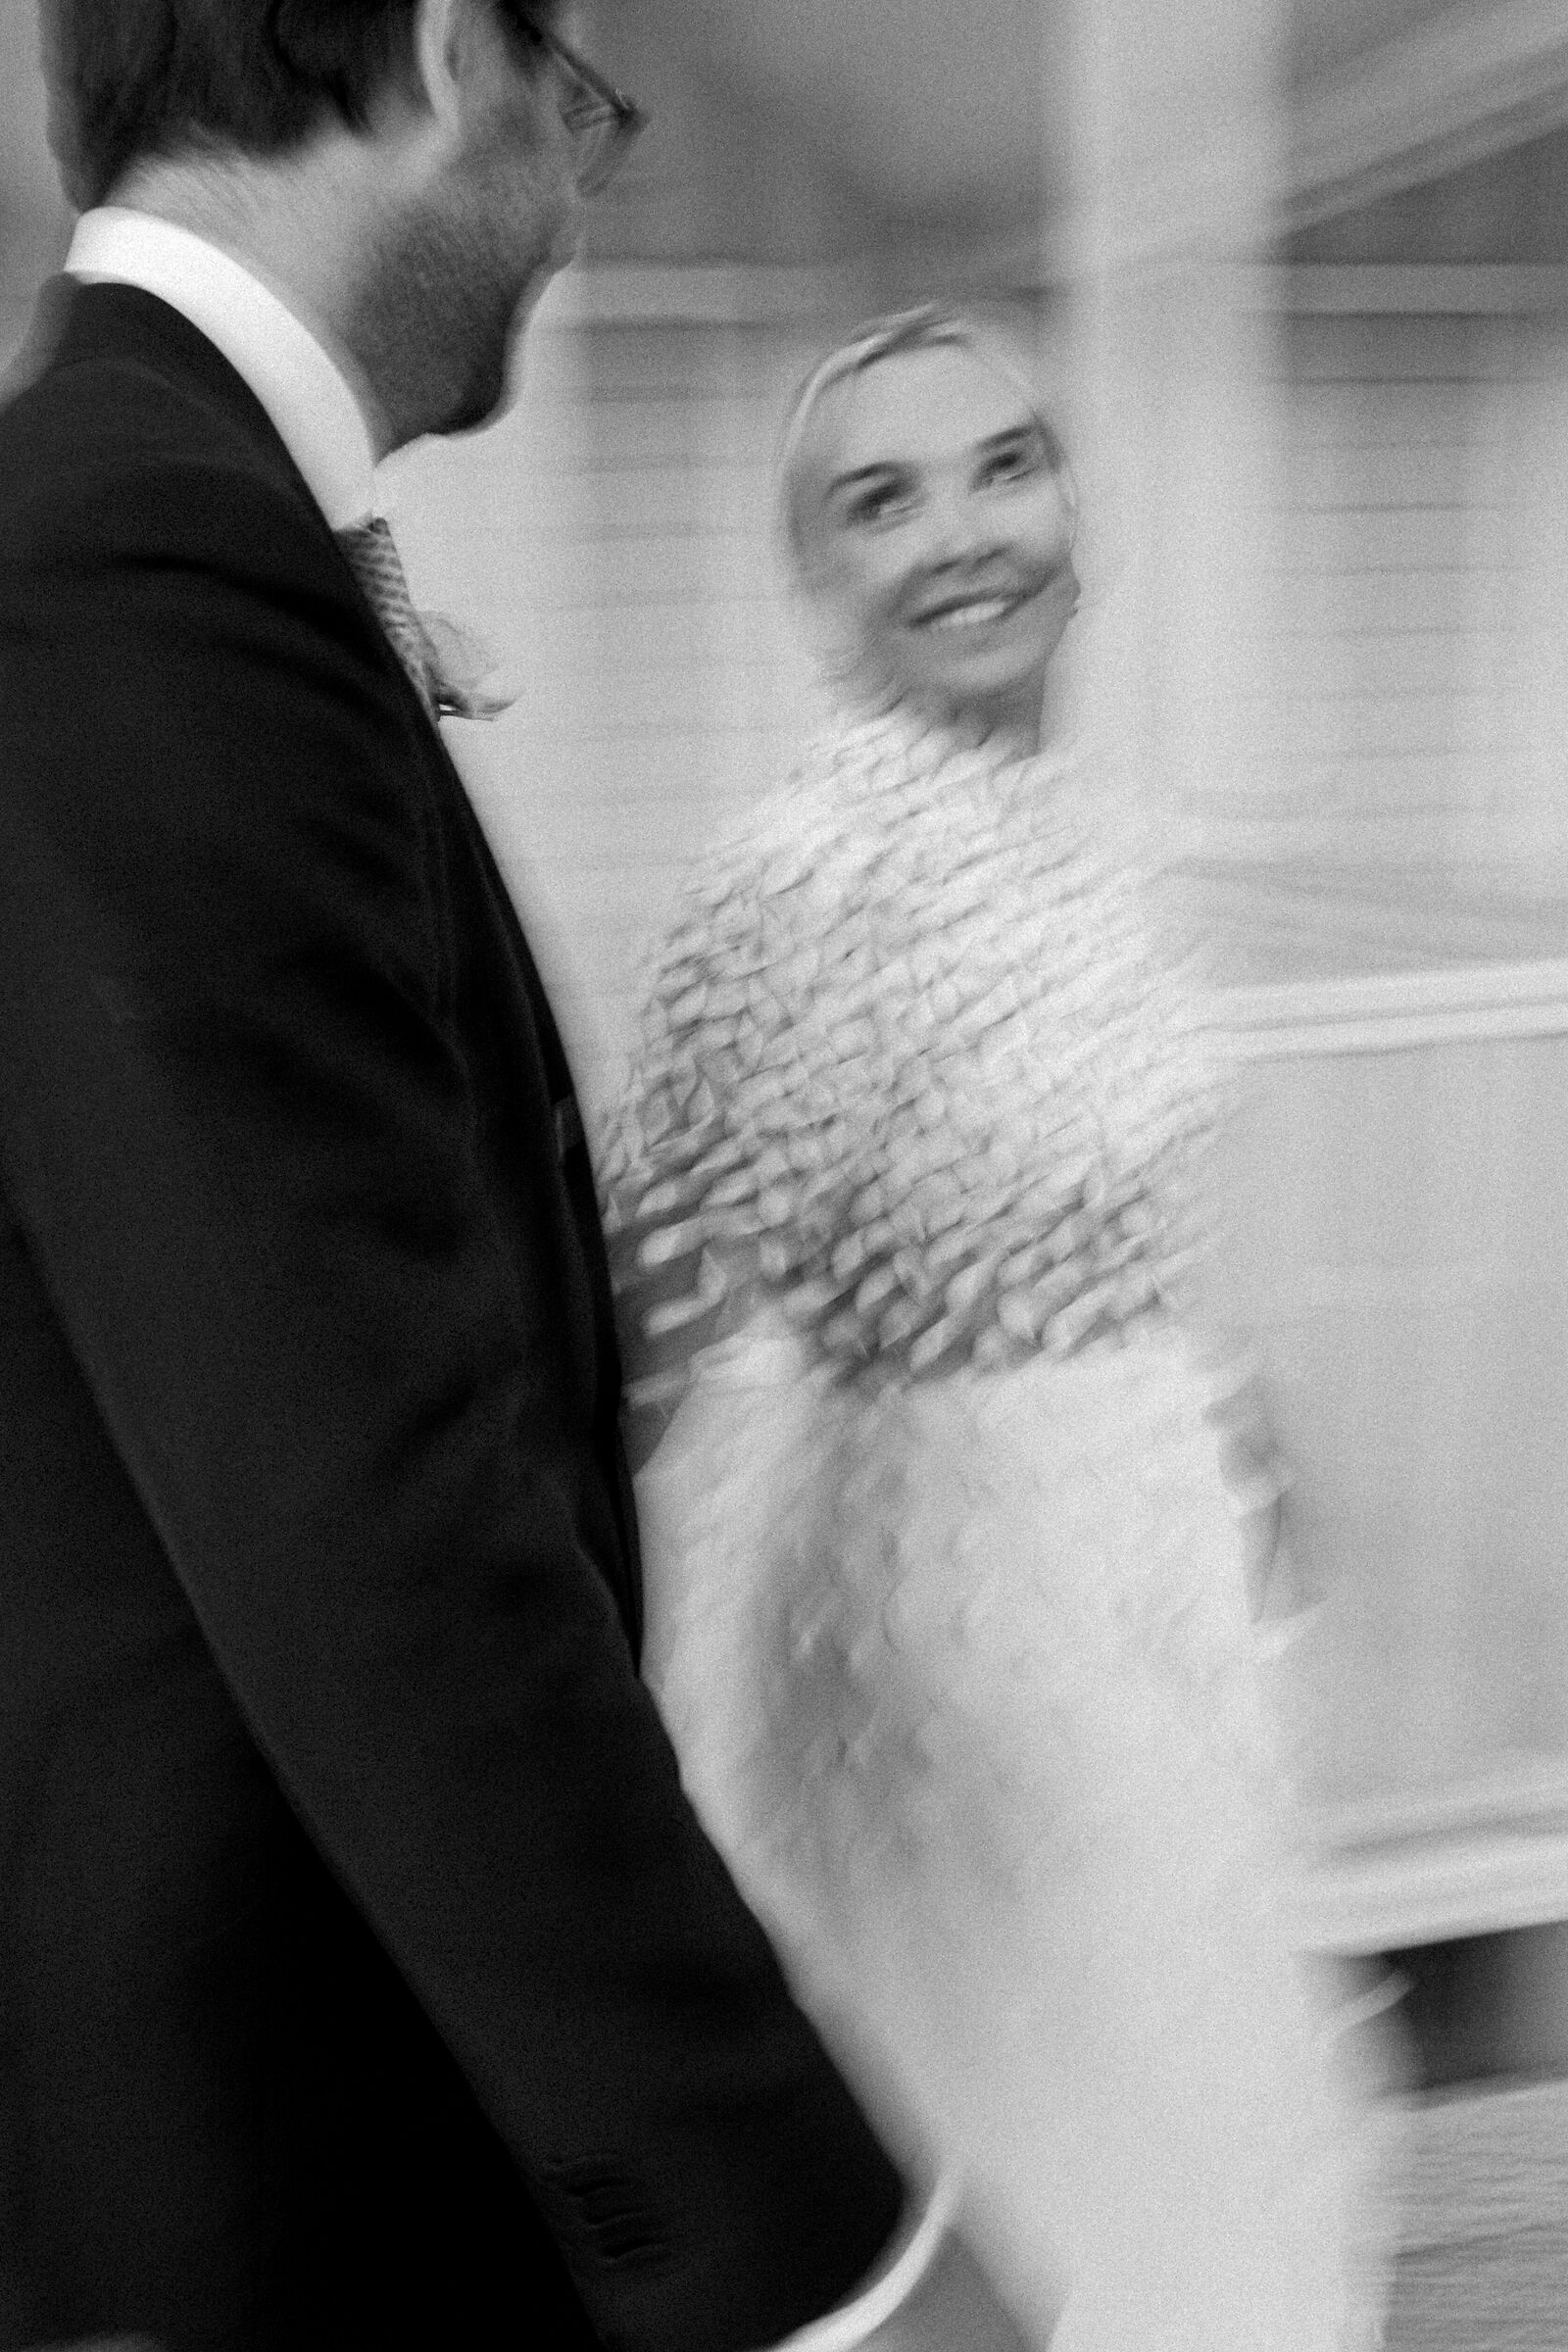 blurry bride...